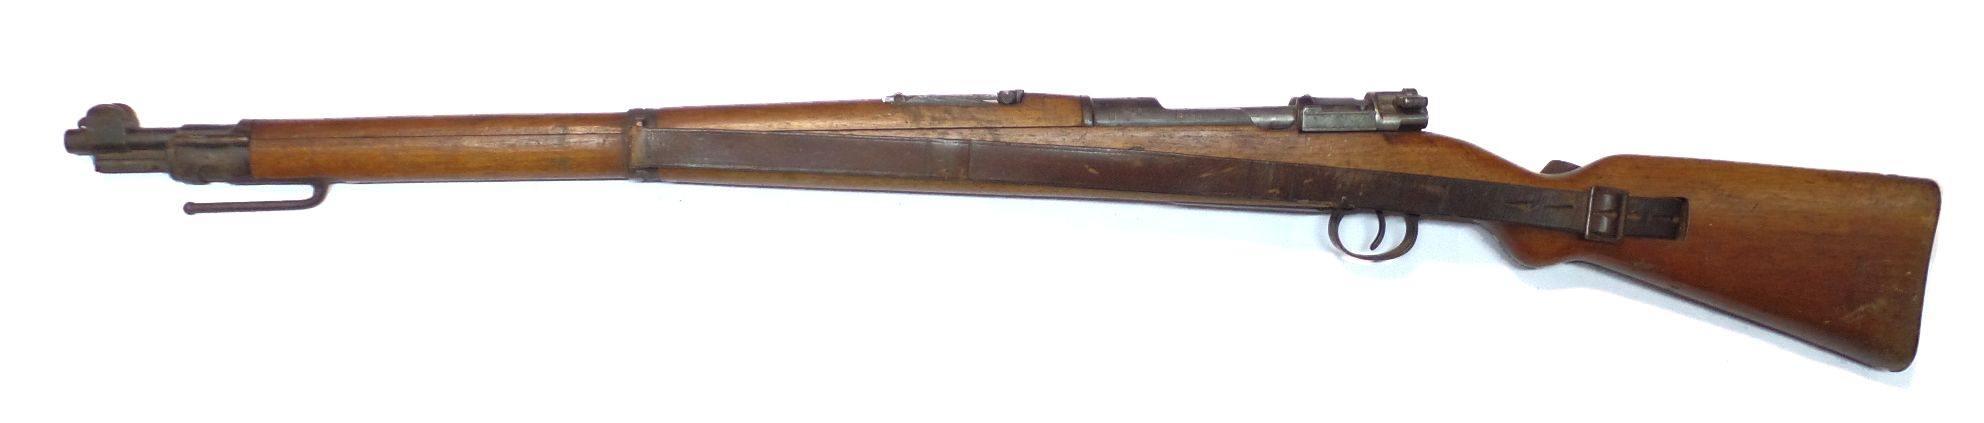 MAUSER K98A calibre 8x57IS